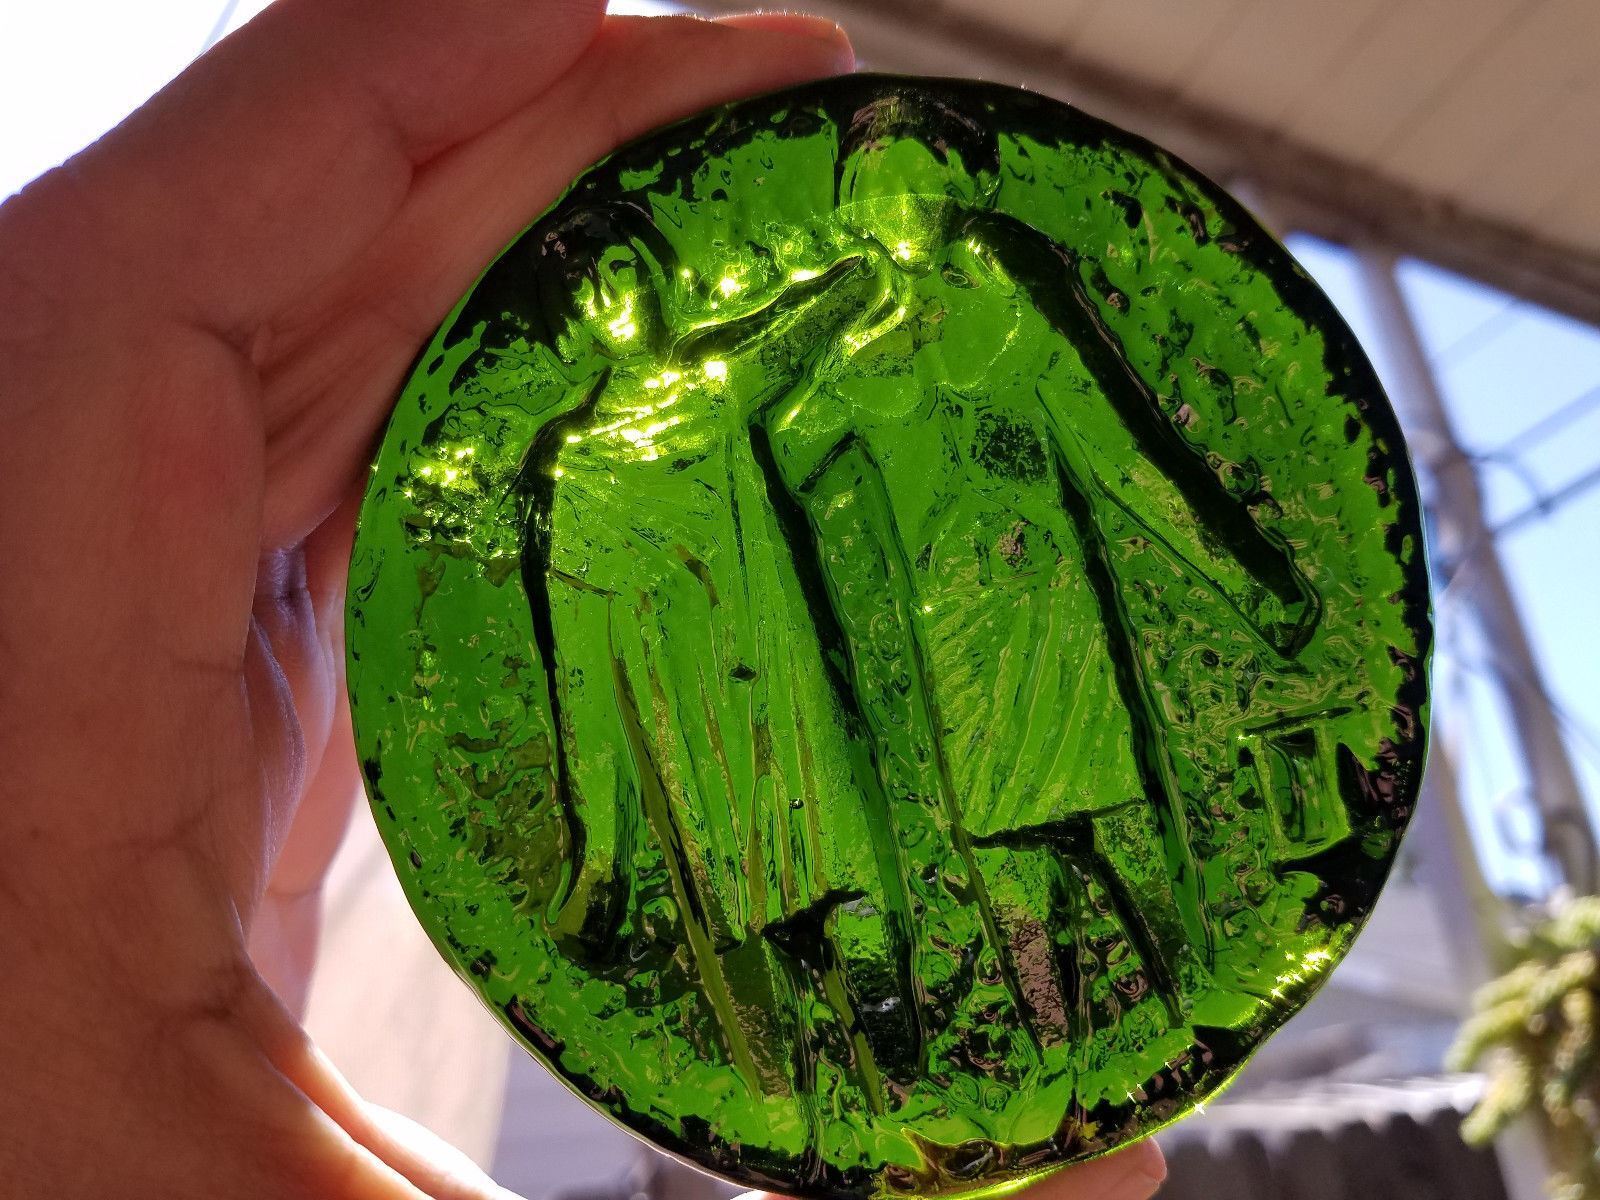 Green BLENKO Handcraft Art Glass Paperweights Lot Of 6 Без бренда - фотография #7